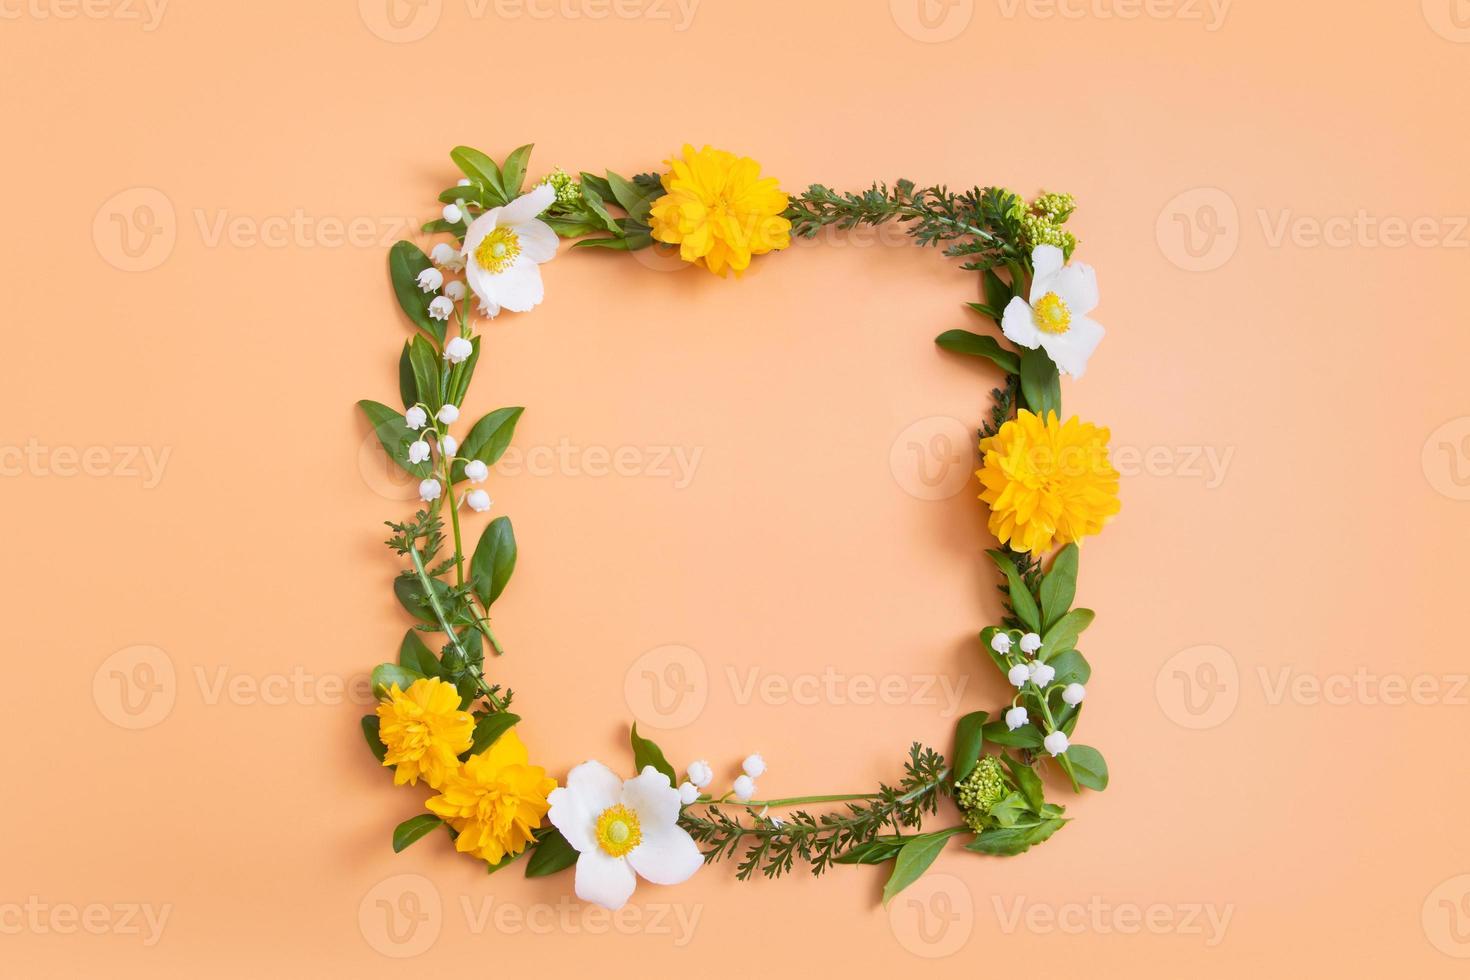 composição de verão ou primavera em um fundo orangr. flores amarelas e brancas e folhas verdes com uma vista superior de coroa de espaço de cópia. verão, conceito floral de primavera foto